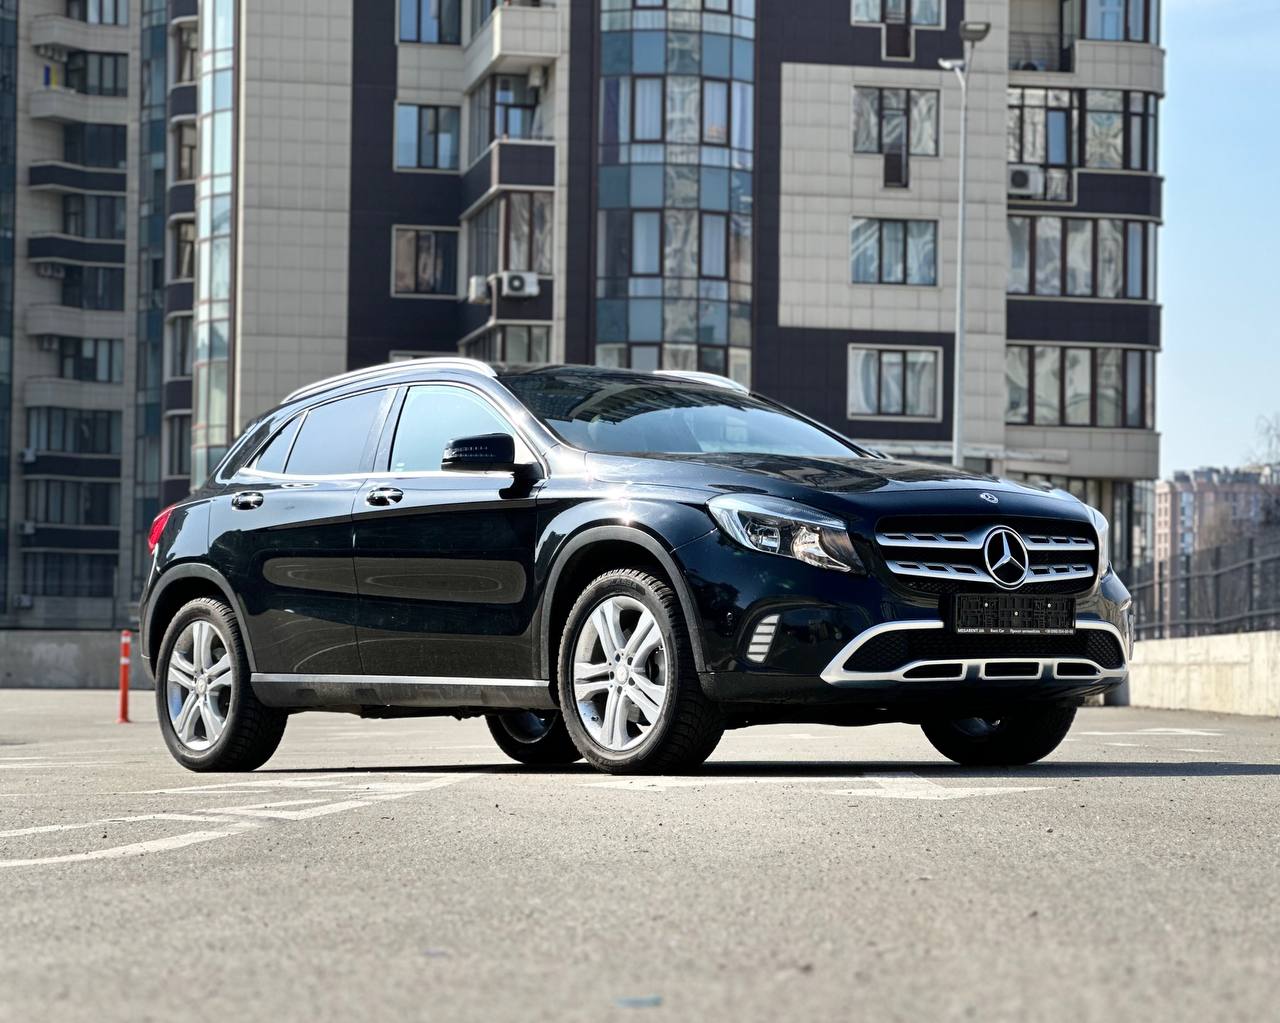   Mercedes GLA   - 